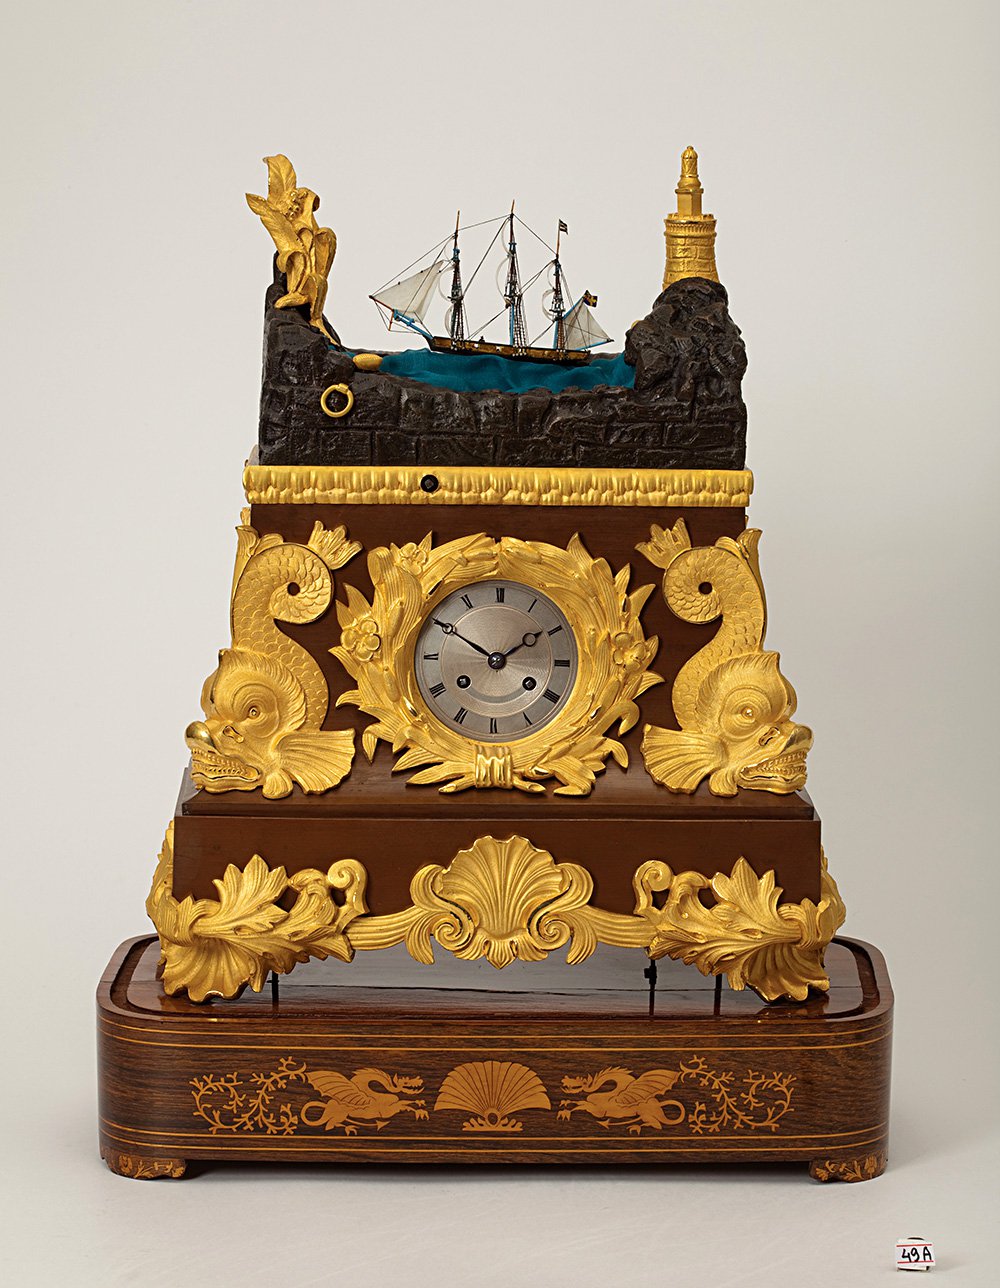 Часы каминные «Галеон» с музыкальной шкатулкой. 1835. Франция. Специальный проект. Фото: Личное собрание/ Российский антикварный салон